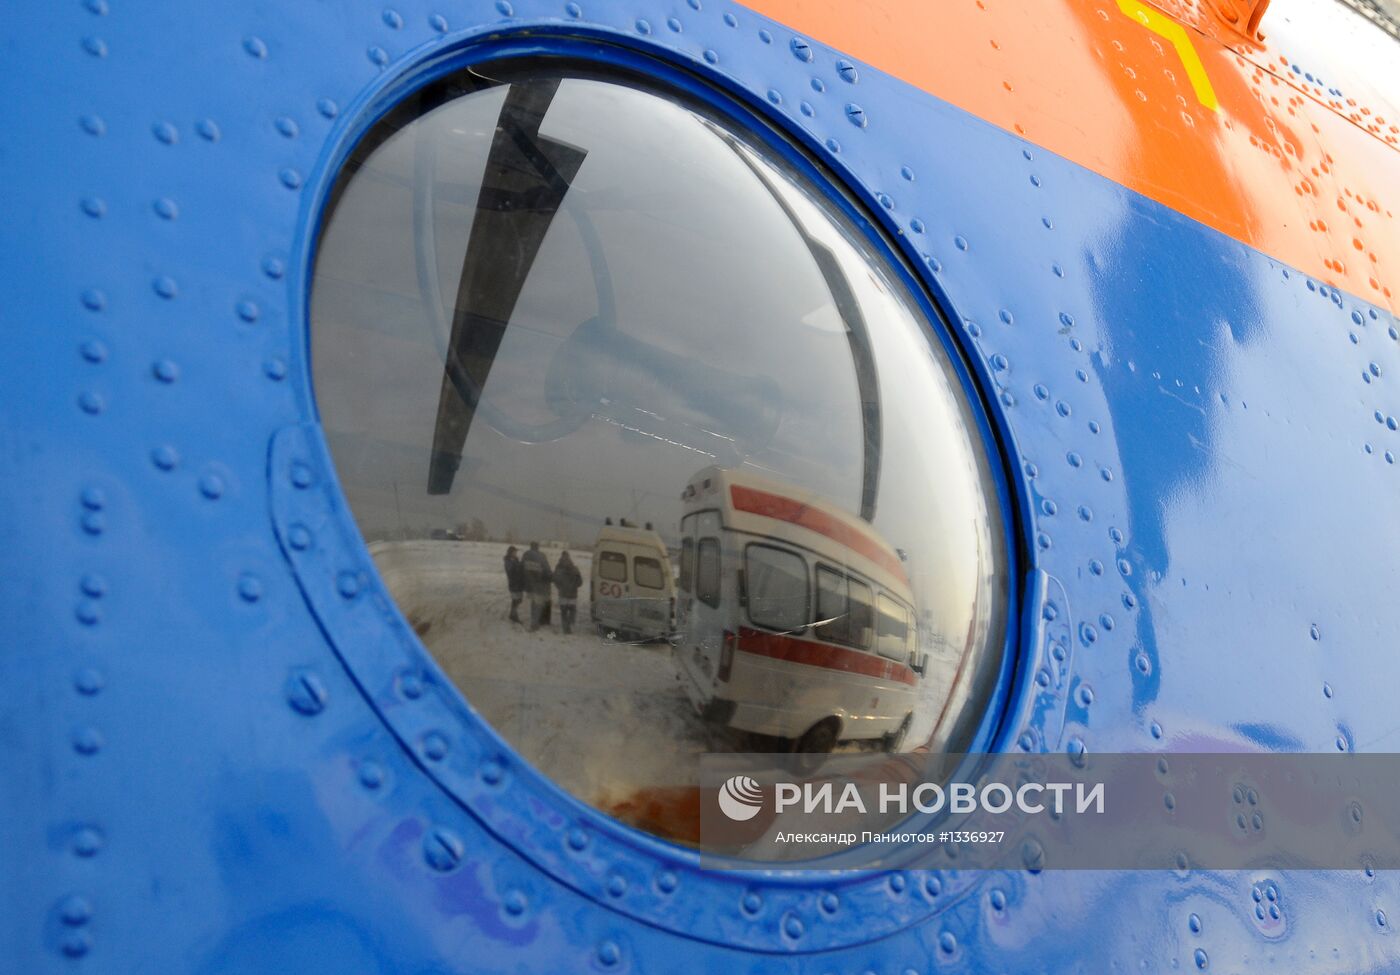 Работа санитарной авиации в Красноярском крае